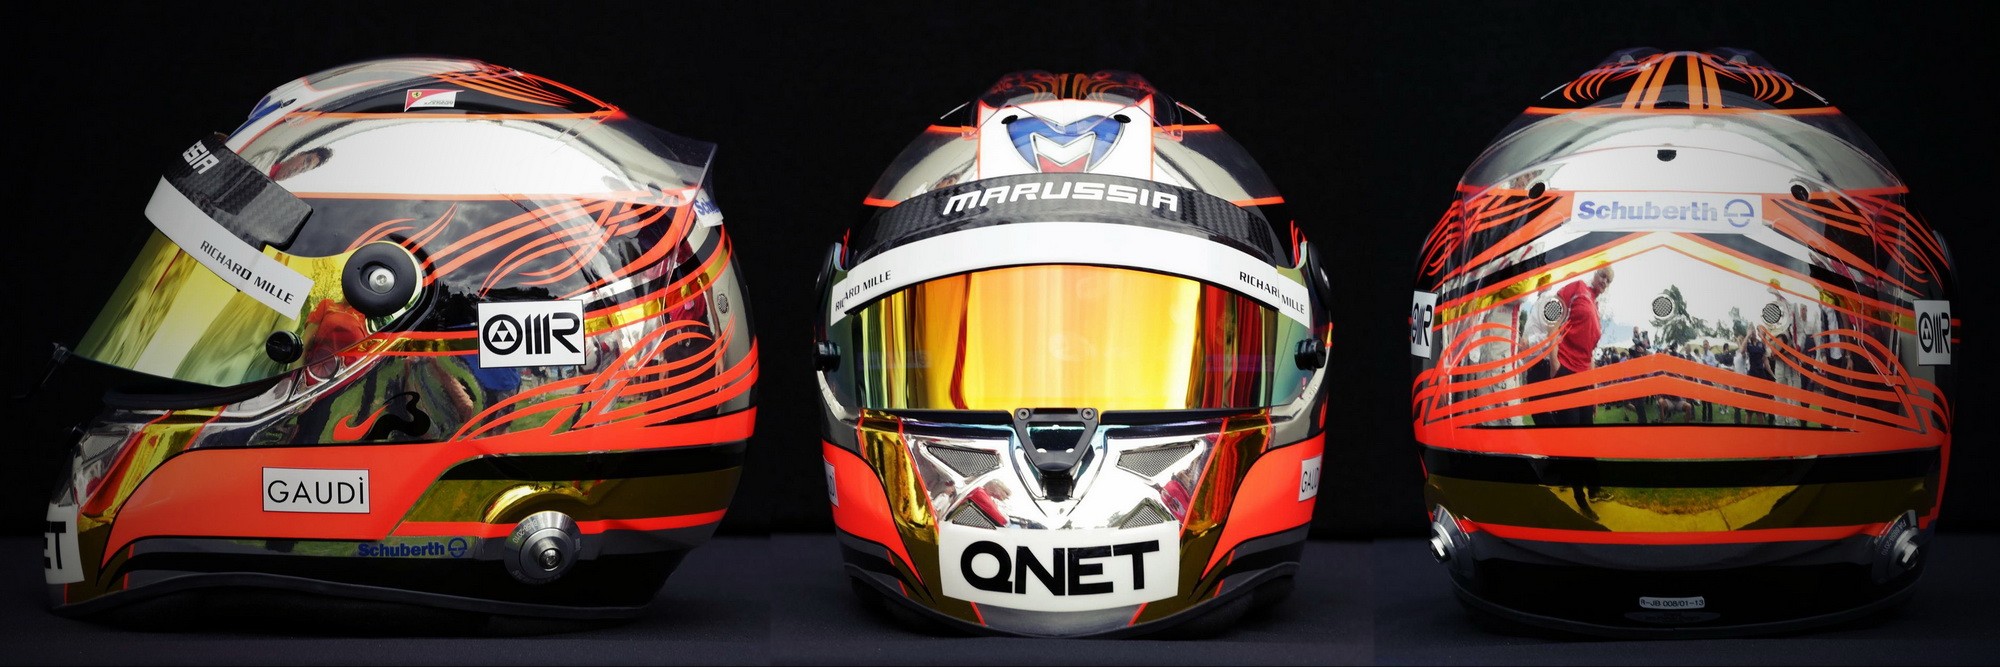 Шлем Жюля Бьянки на сезон 2013 года | 2013 helmet of Jules Bianchi